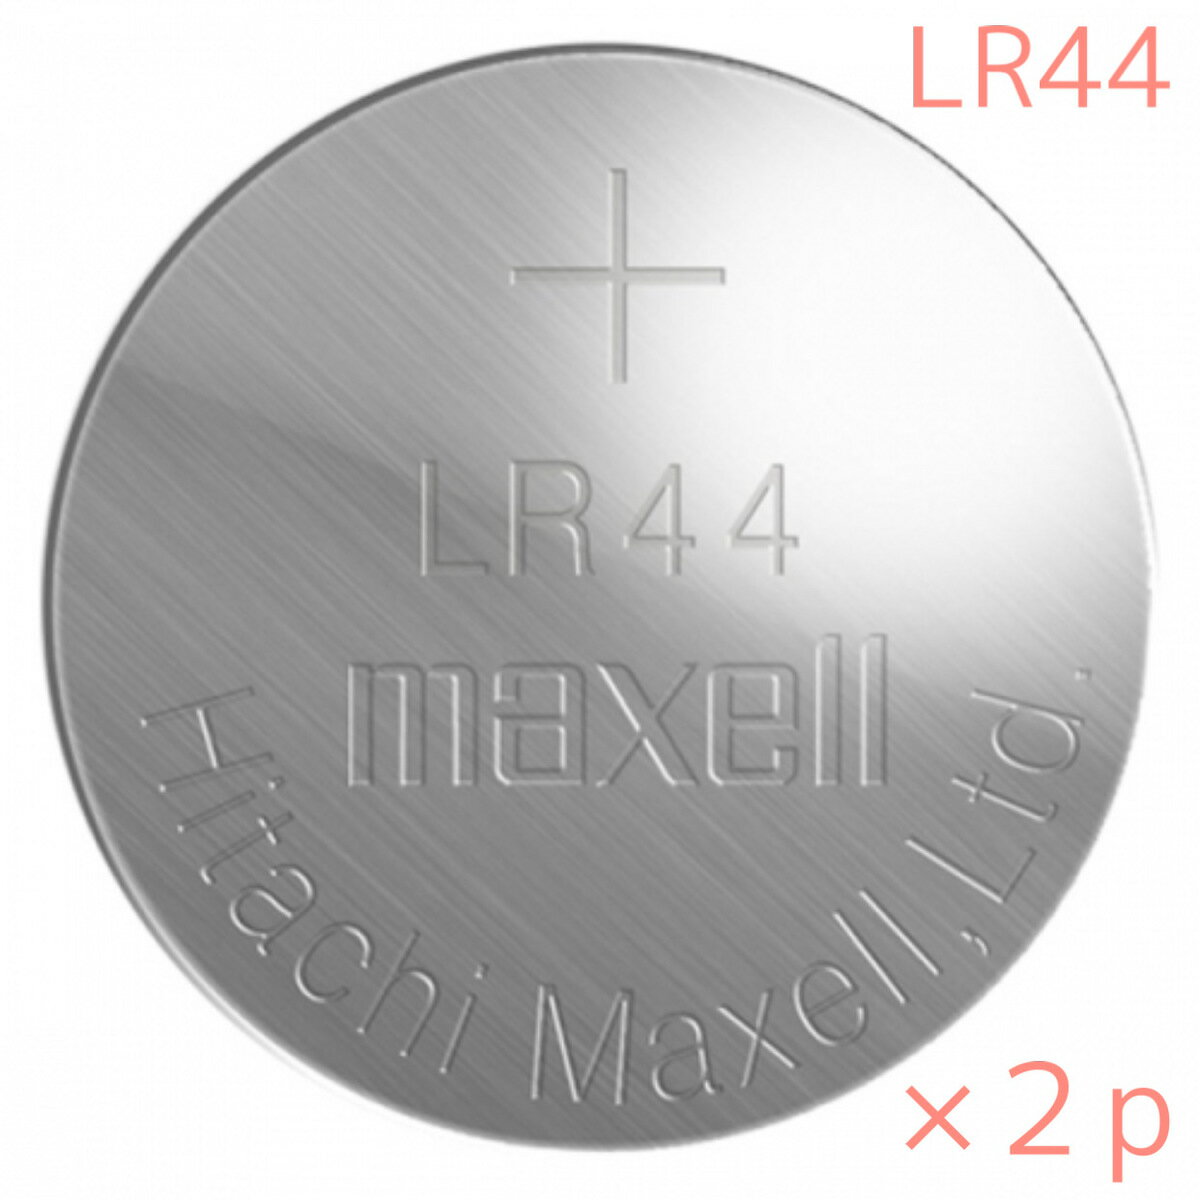 LR44 ボタン電池 maxell アルカリボタ